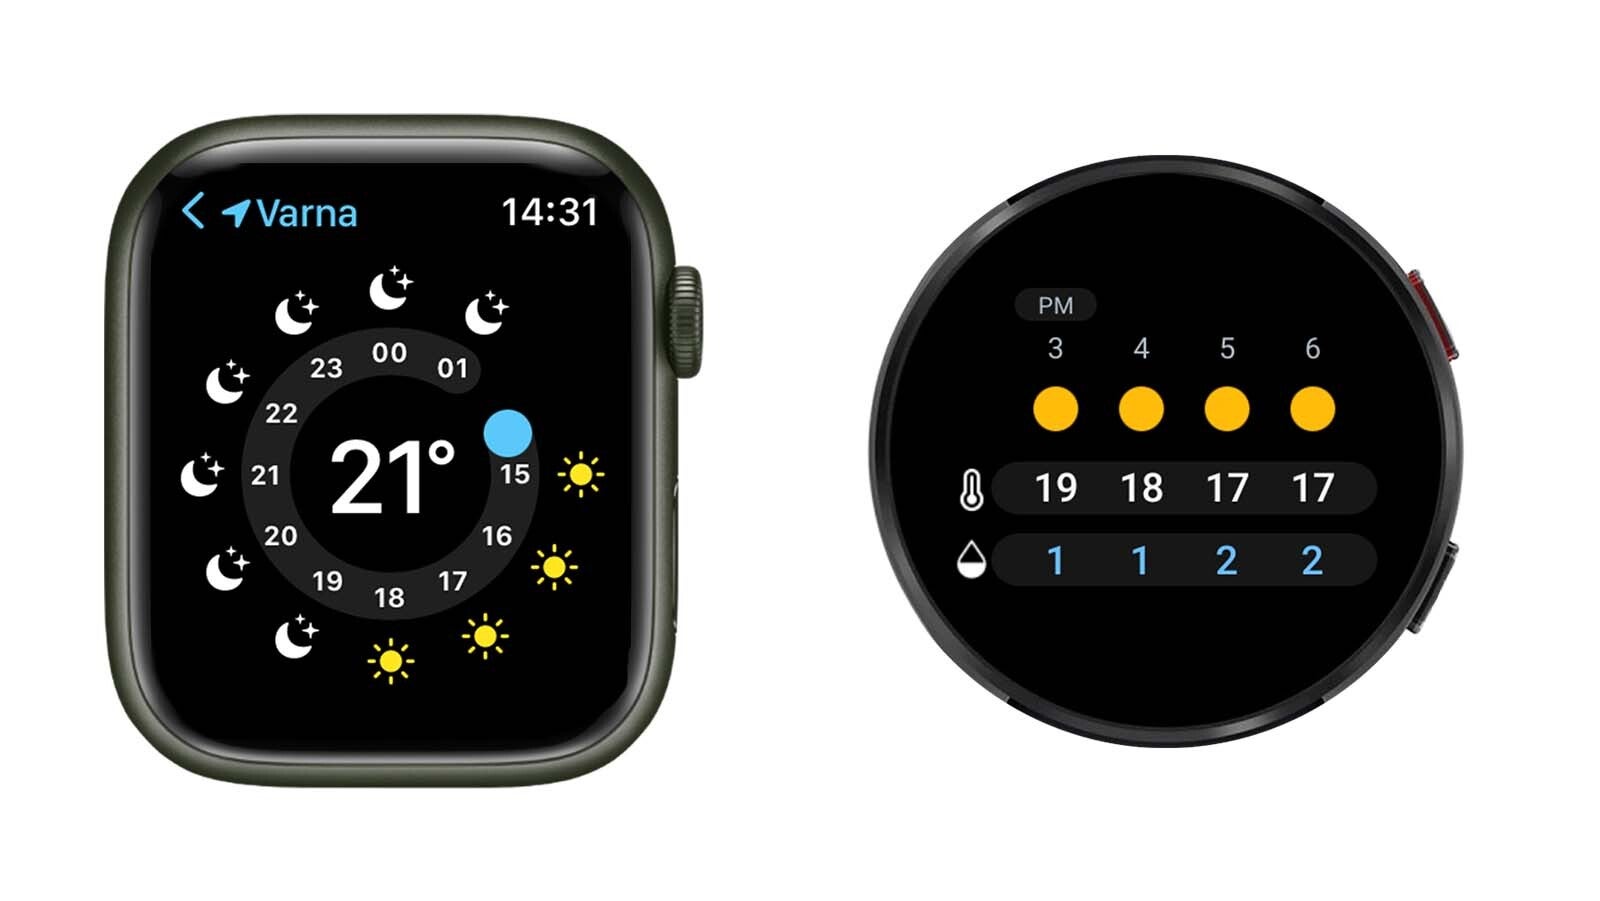 Apple Watch contre Samsung Galaxy Watch&nbsp;  comparaison d'interface - Les smartwatches rondes sont-elles terriblement peu pratiques ?  Pourquoi l'Apple Watch rectangulaire a bien plus de sens